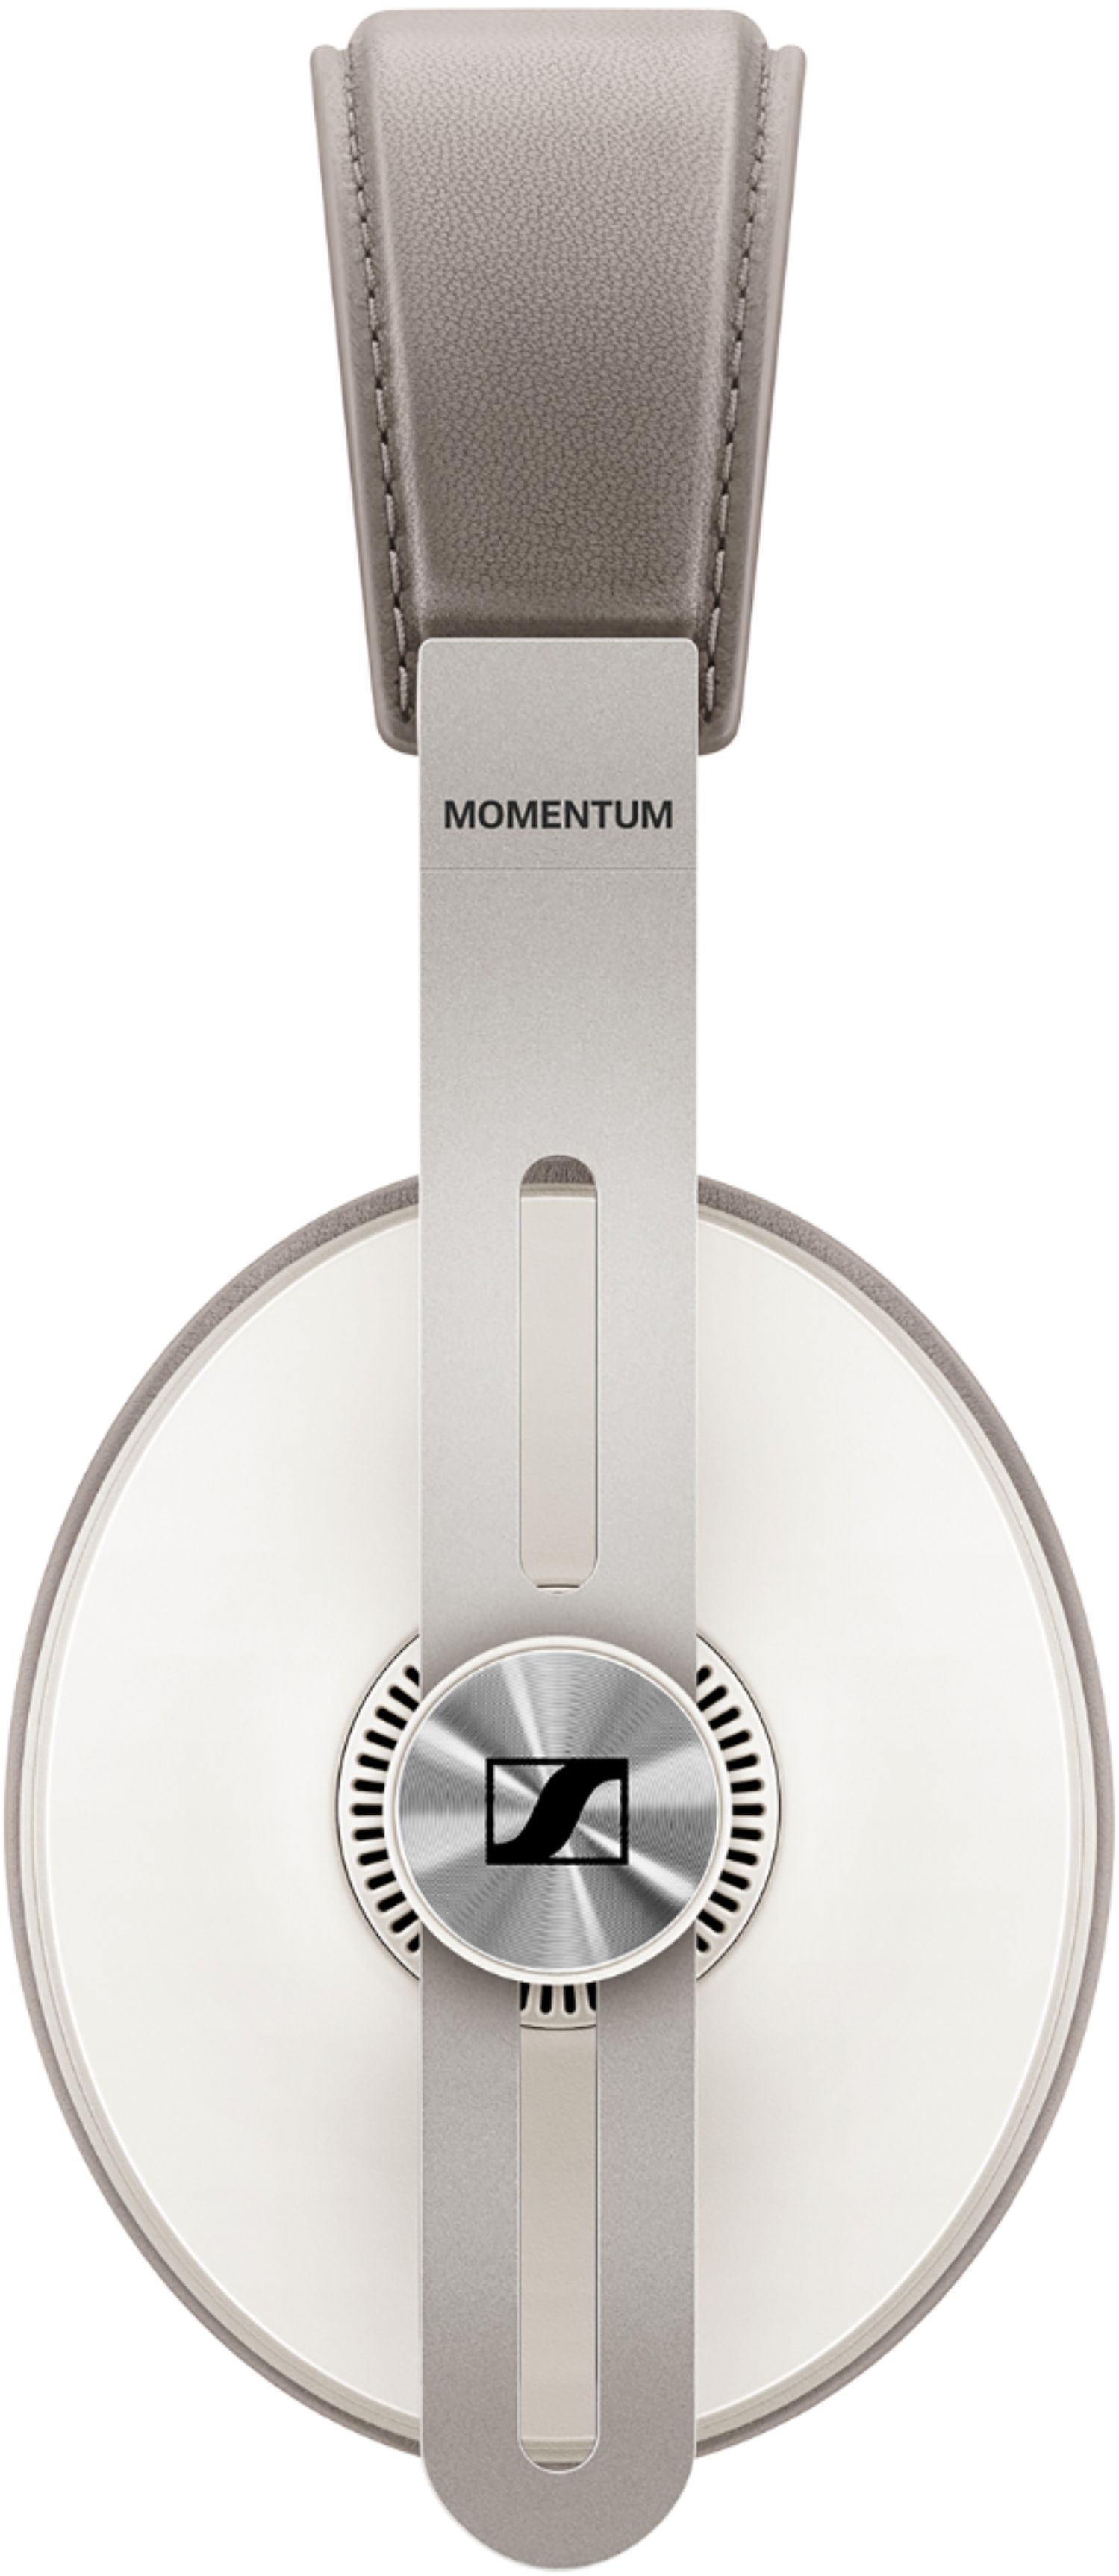 Sennheiser MOMENTUM Wireless Noise Canceling Over-the-Ear Headphones Sandy  White M3AEBTXL SANDY WHITE - Best Buy